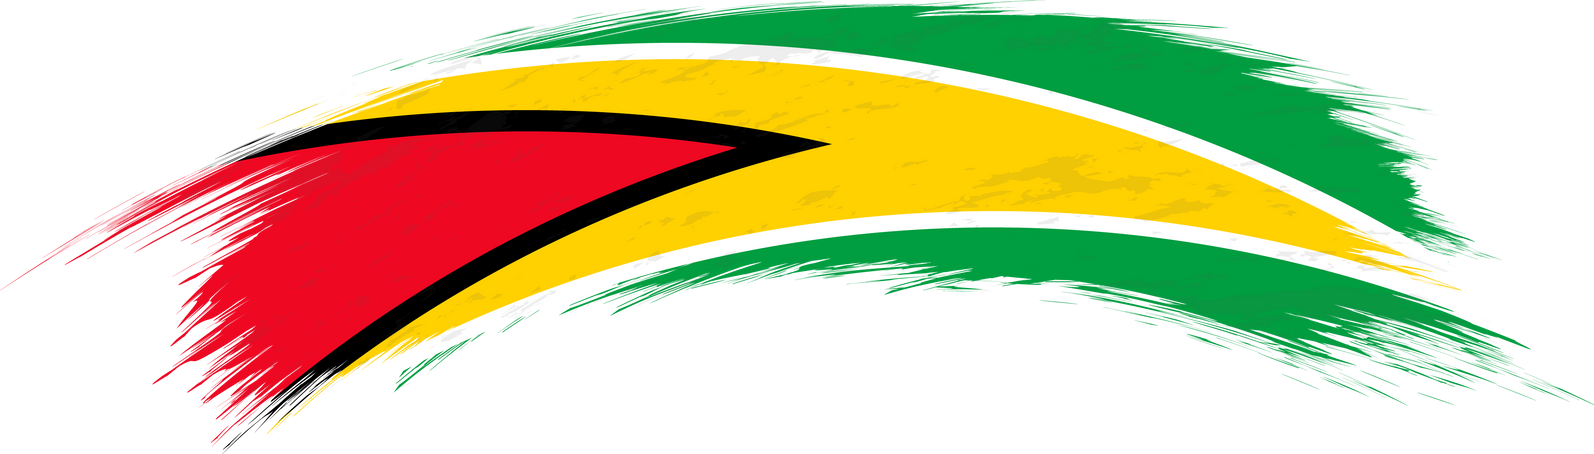 Flag of Guyana in rounded grunge brush stroke.